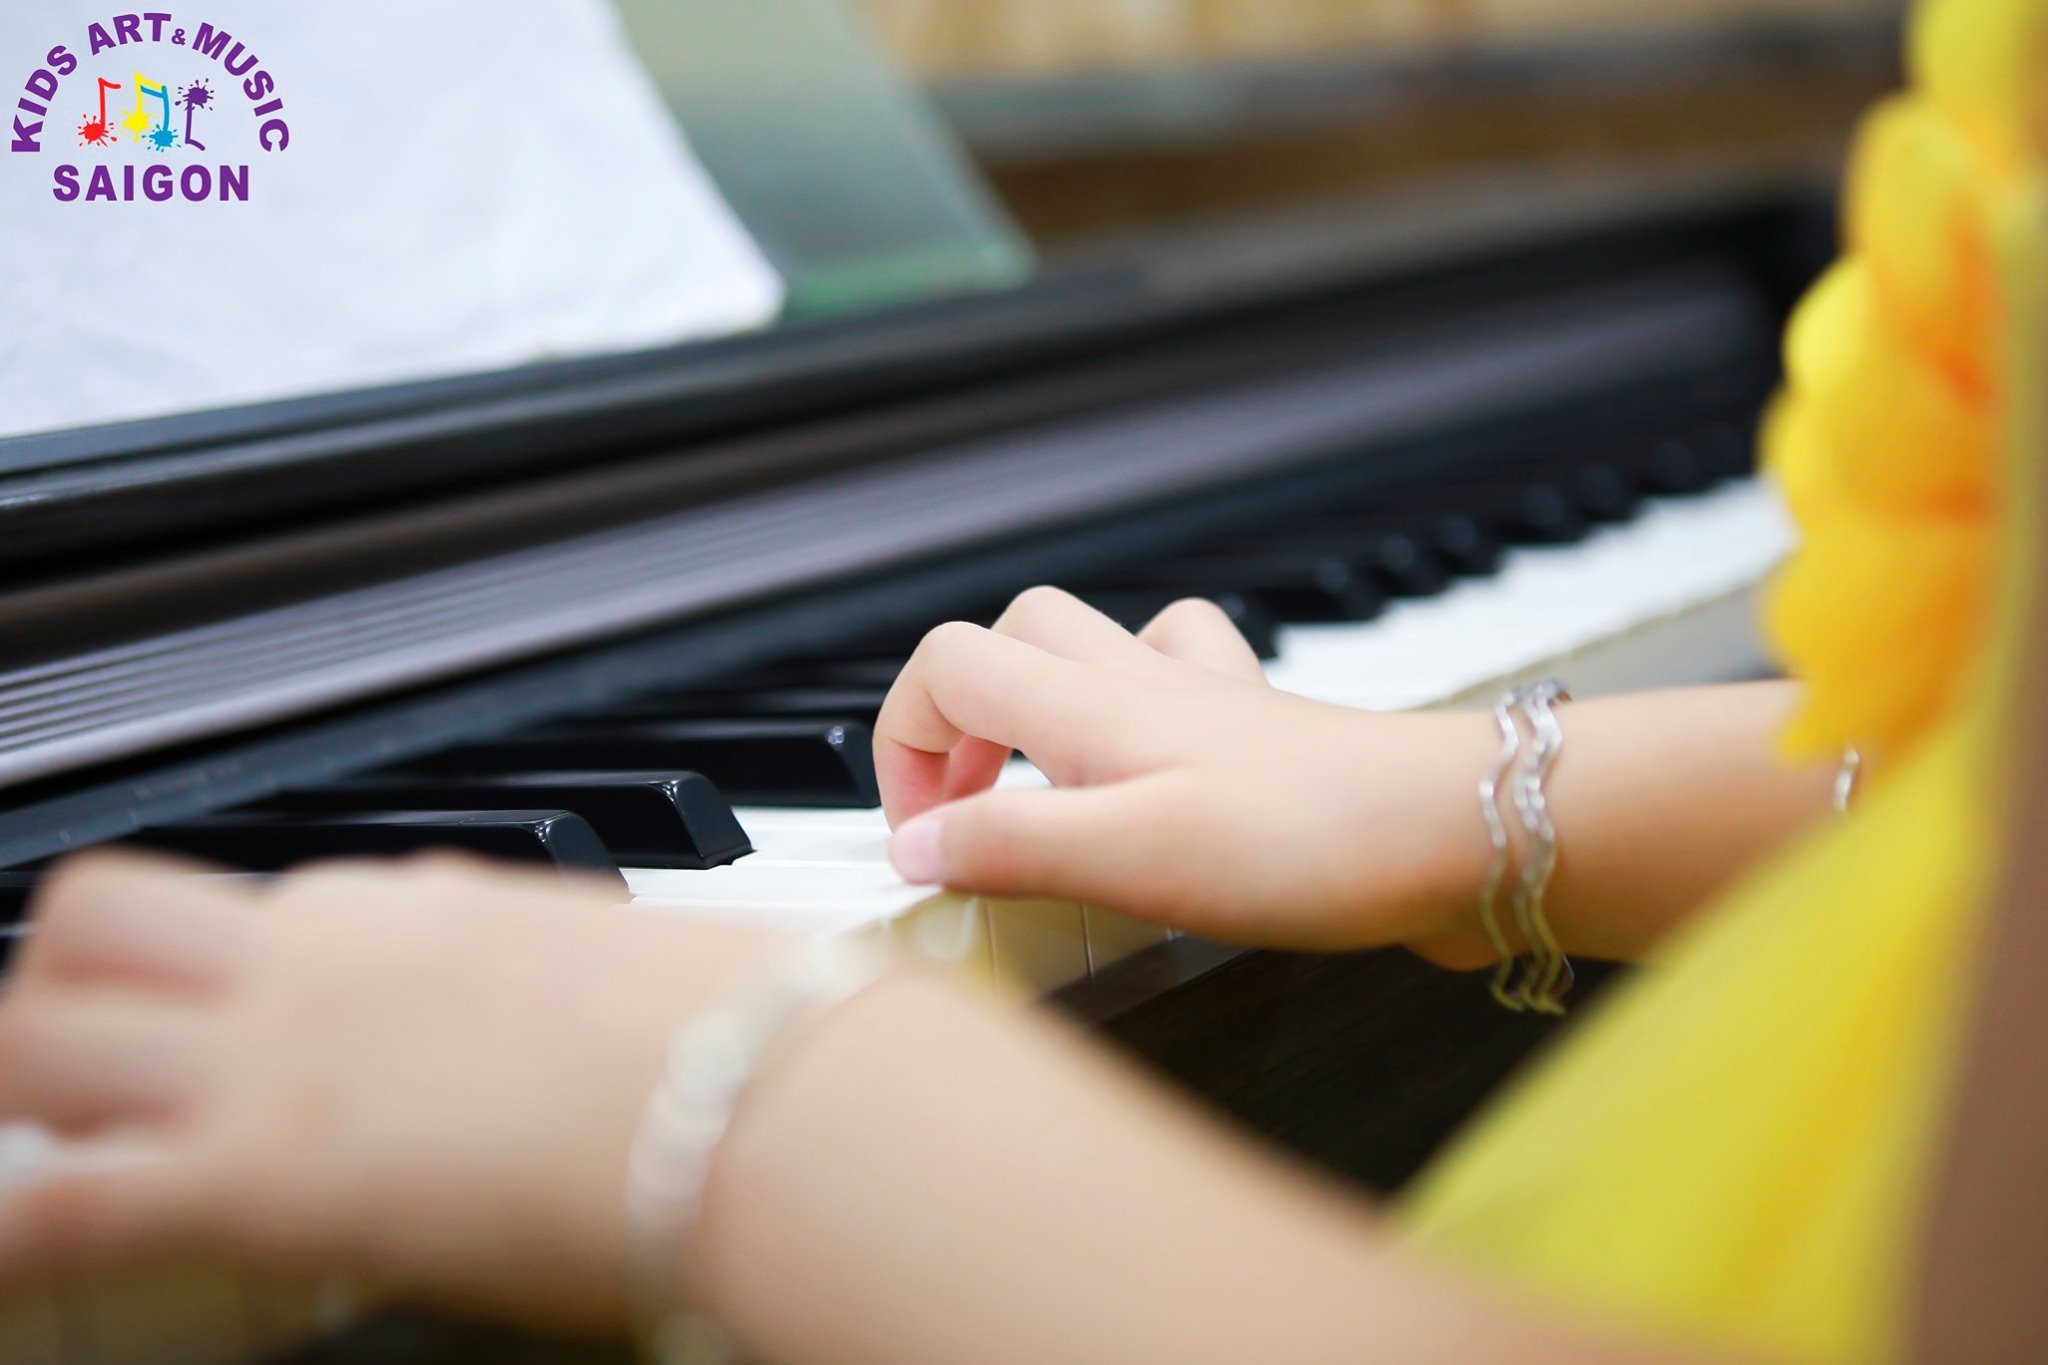 Hướng dẫn chơi đàn piano - Cách luyện và tăng tốc ngón tay khi chơi đàn - hình ảnh 3